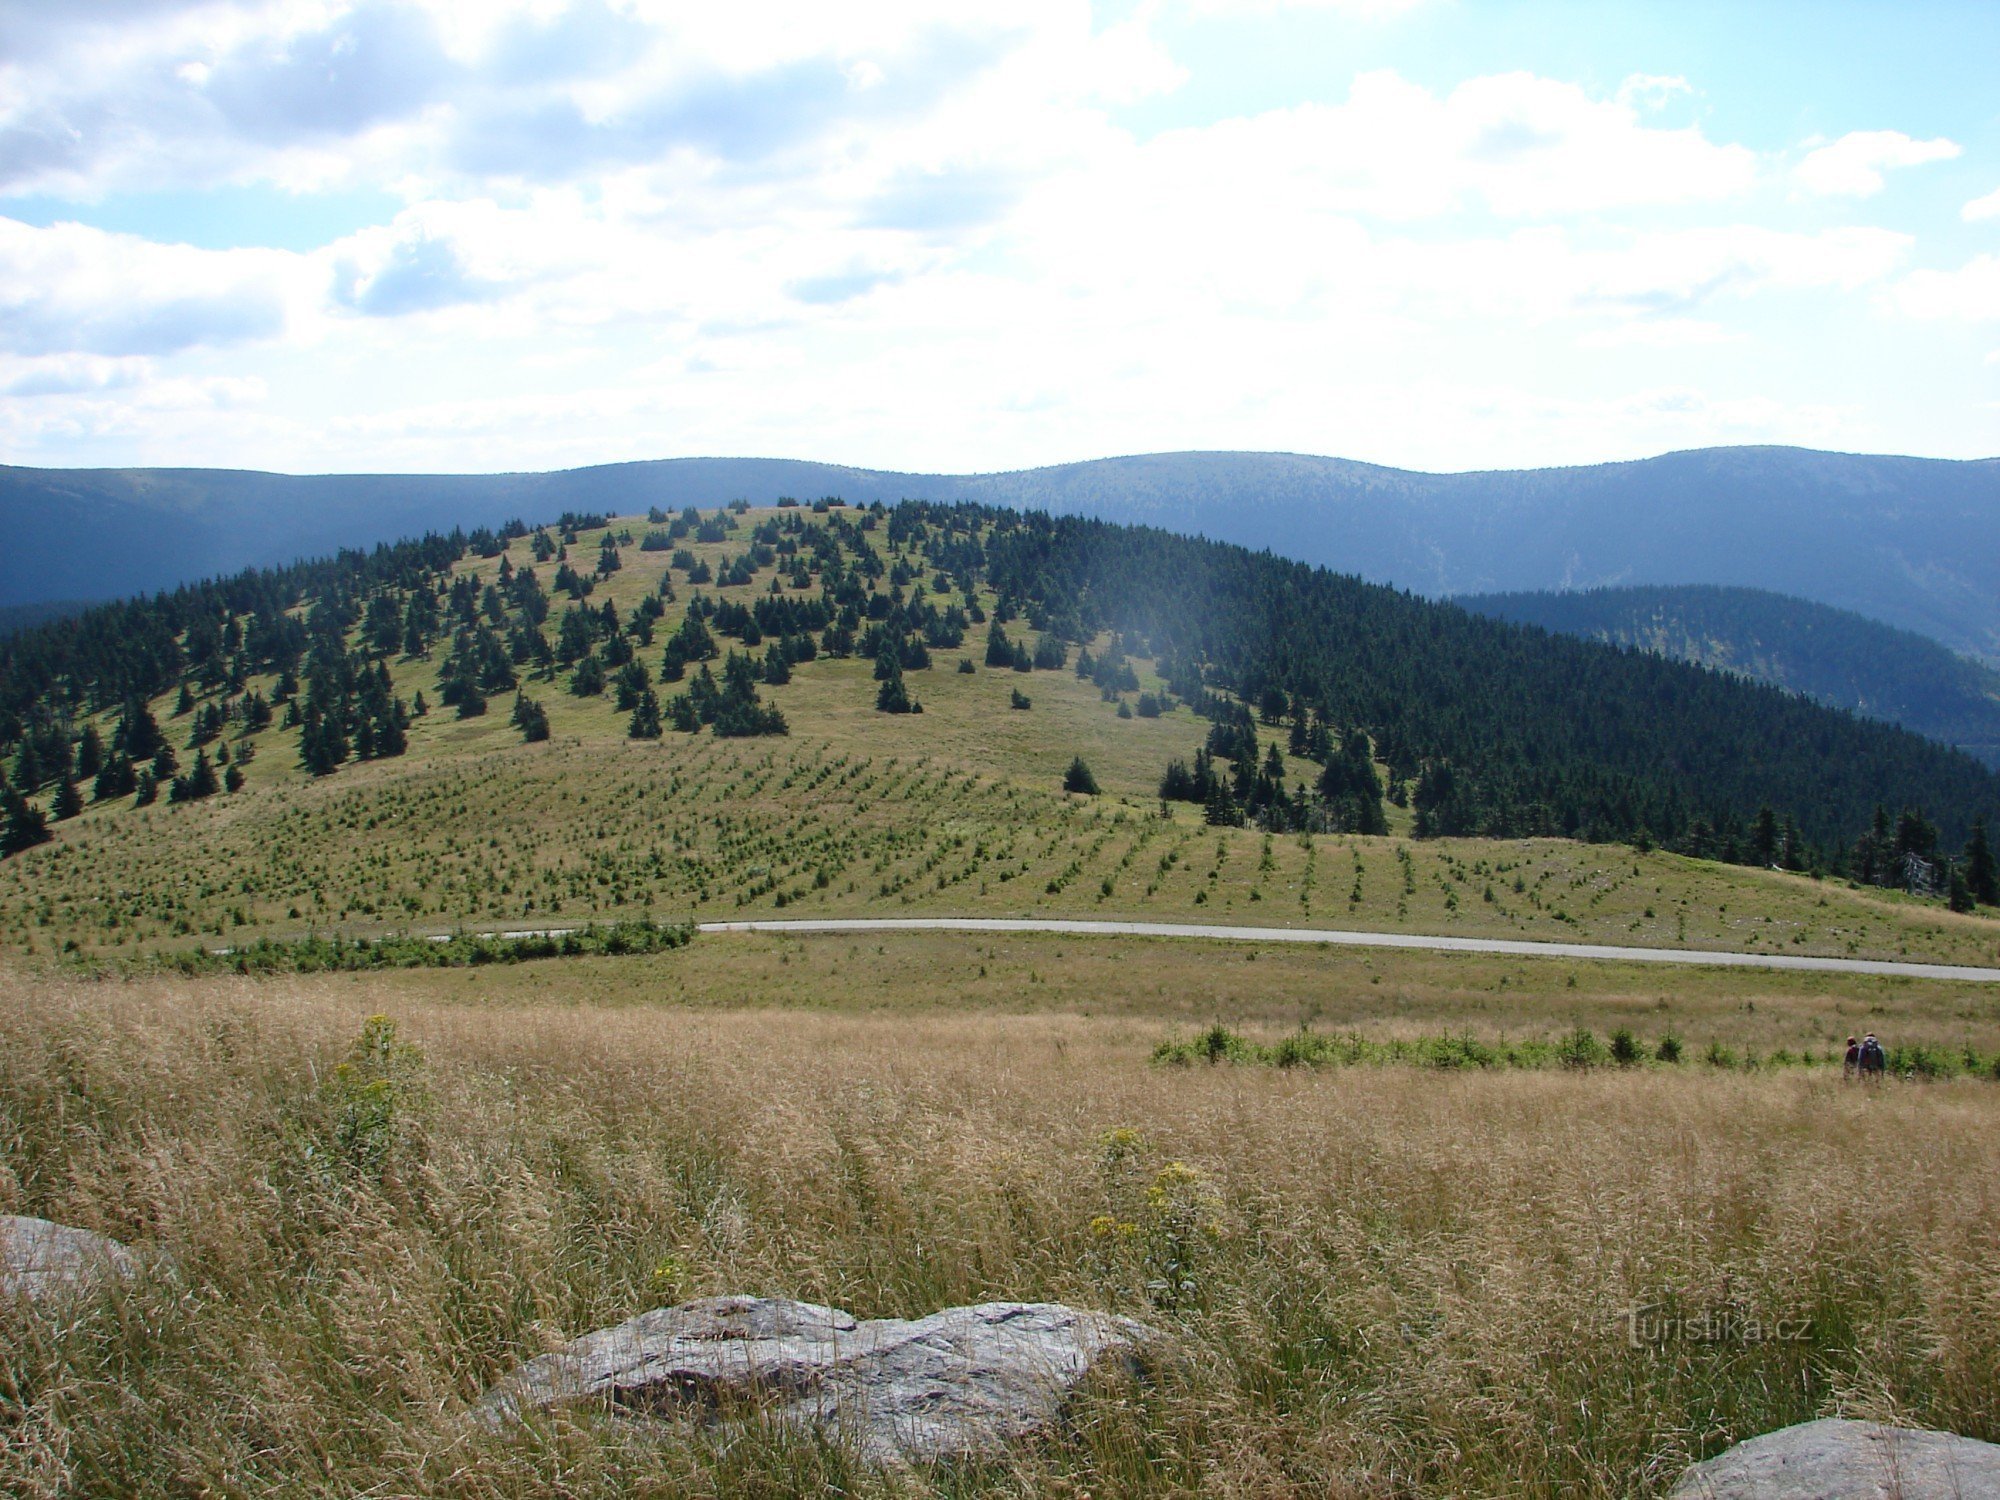 Vřesník peak (Jezerná in the background, Velký Máj on the horizon)